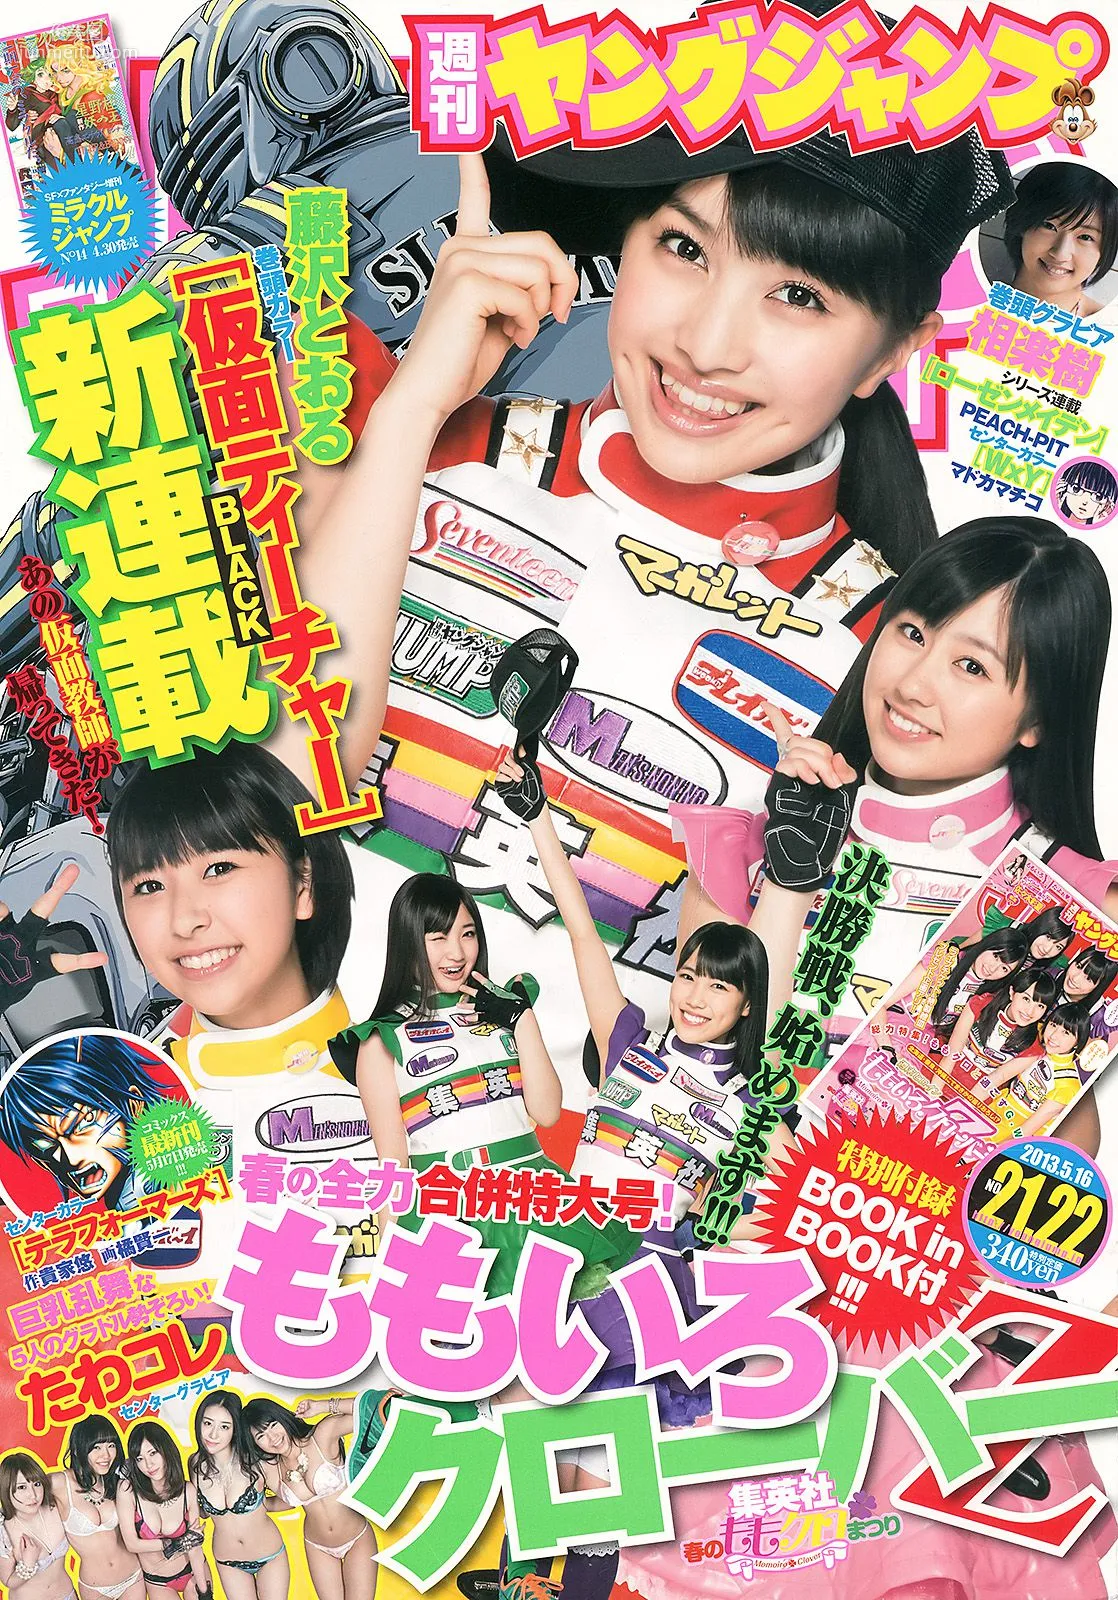 ももいろクローバーZ 相楽樹 たわコレ-たわわコレクション- [Weekly Young Jump] 2013年No.21-22 写真杂志1